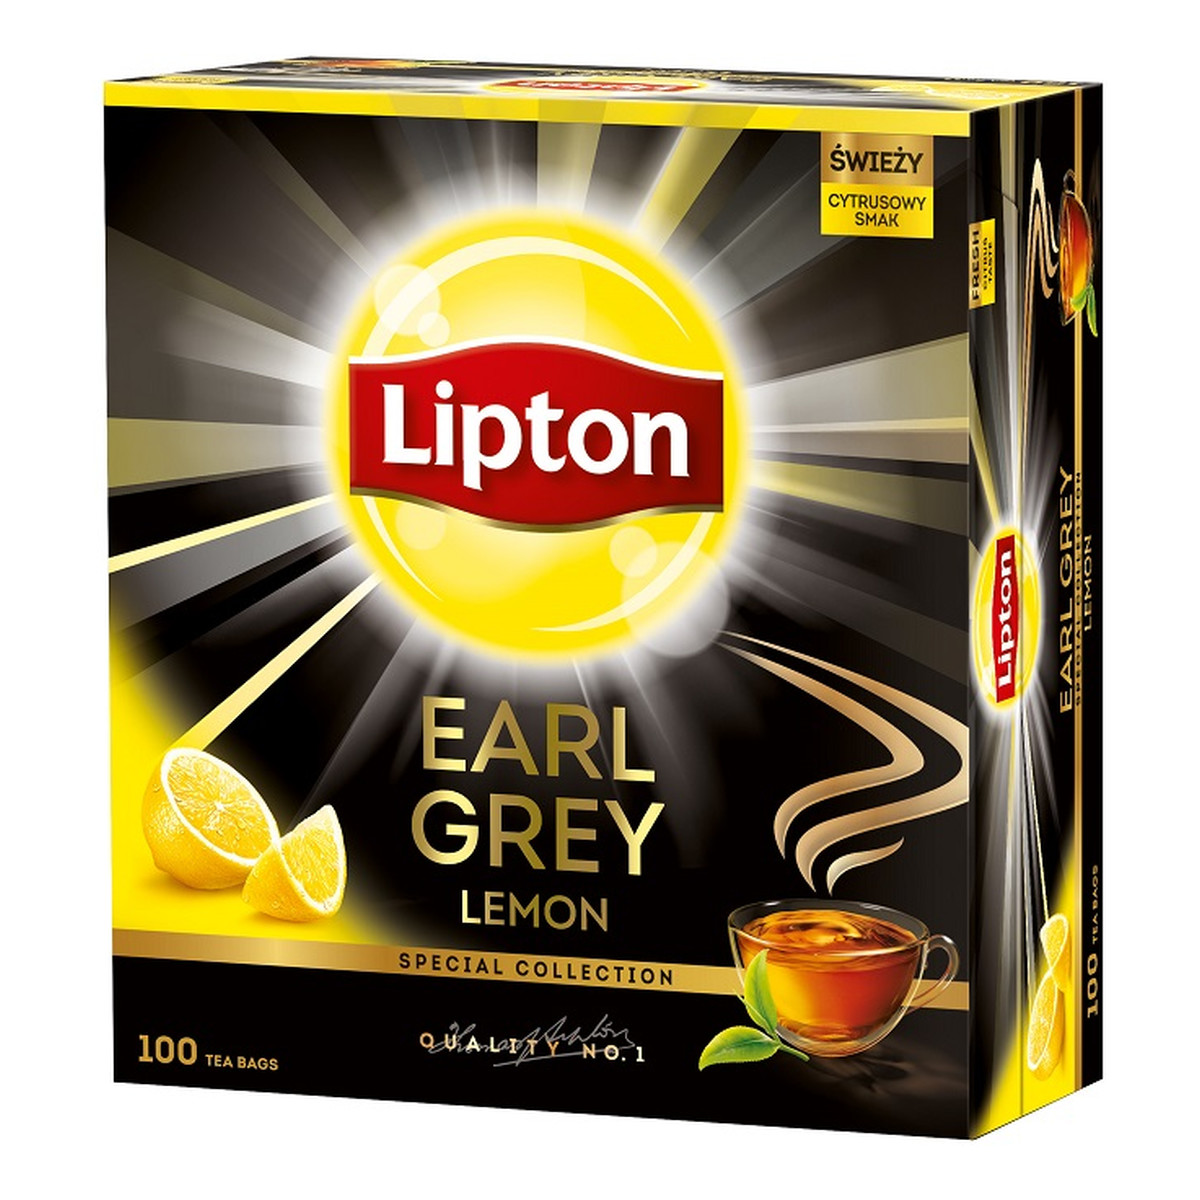 Lipton Earl Grey Lemon herbata czarna Cytryna 100 torebek 200g